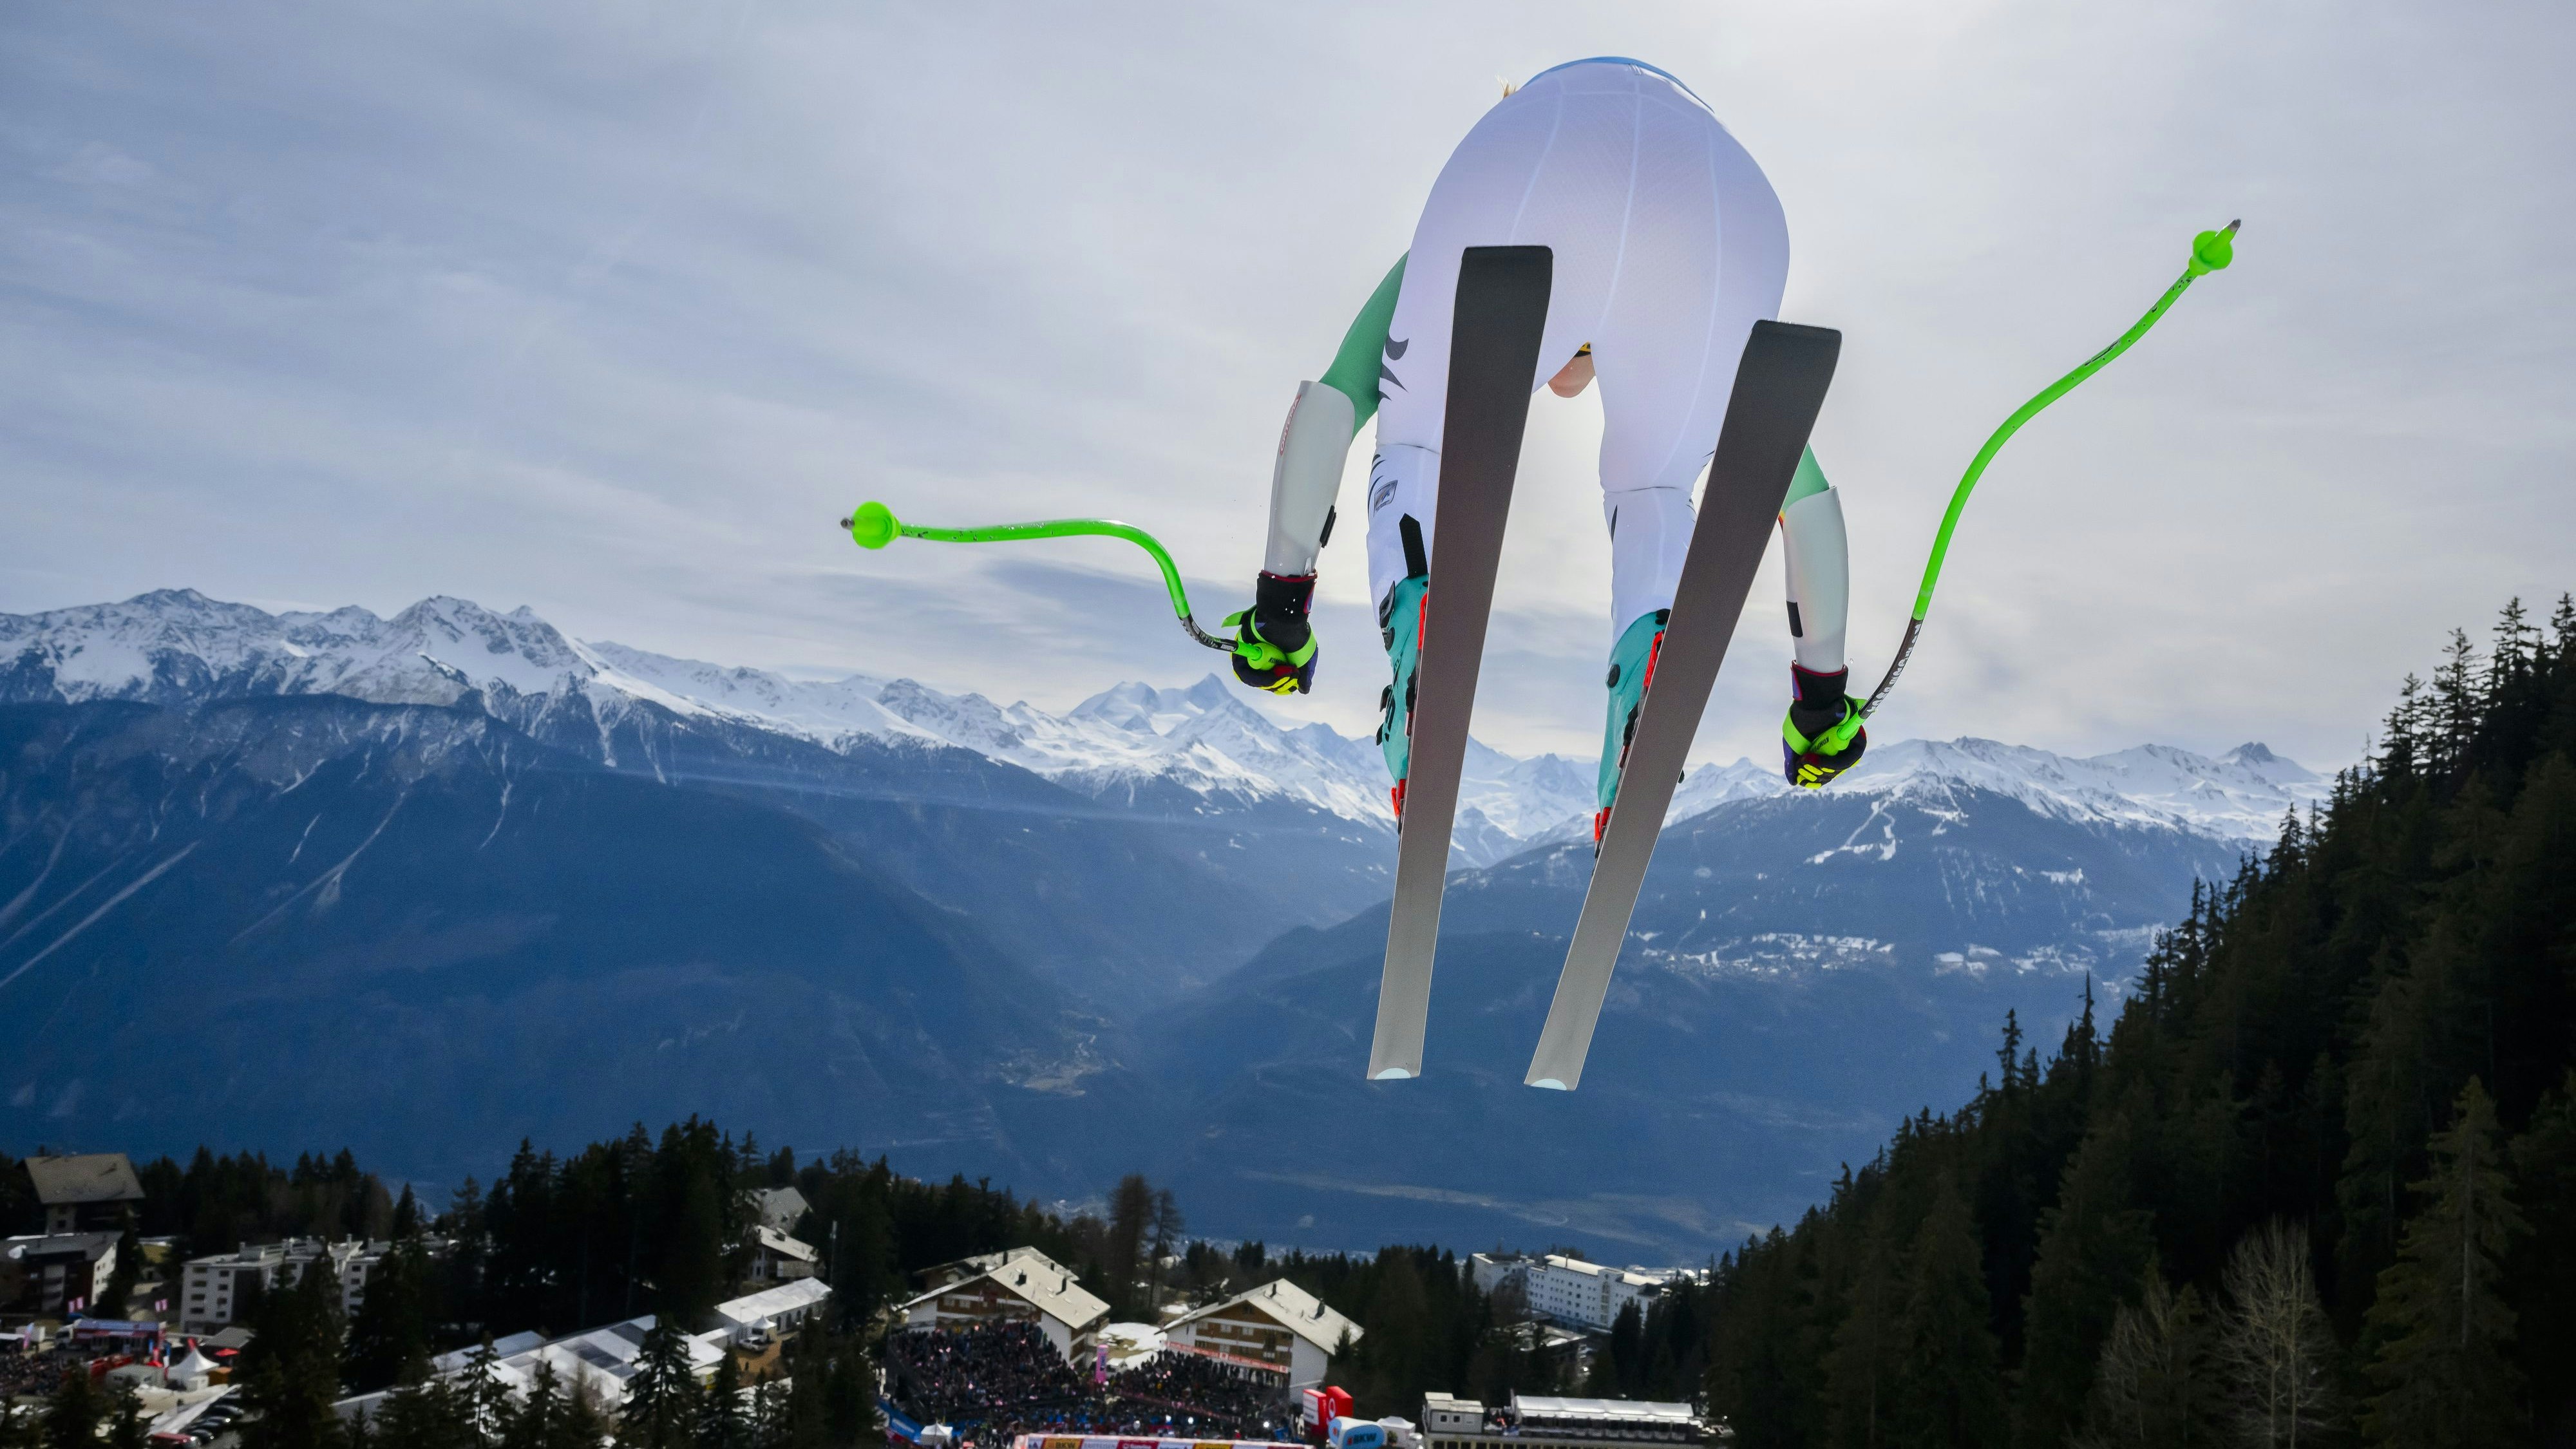 nächstes ski-ass erklärt rücktritt mit nur 25 jahren